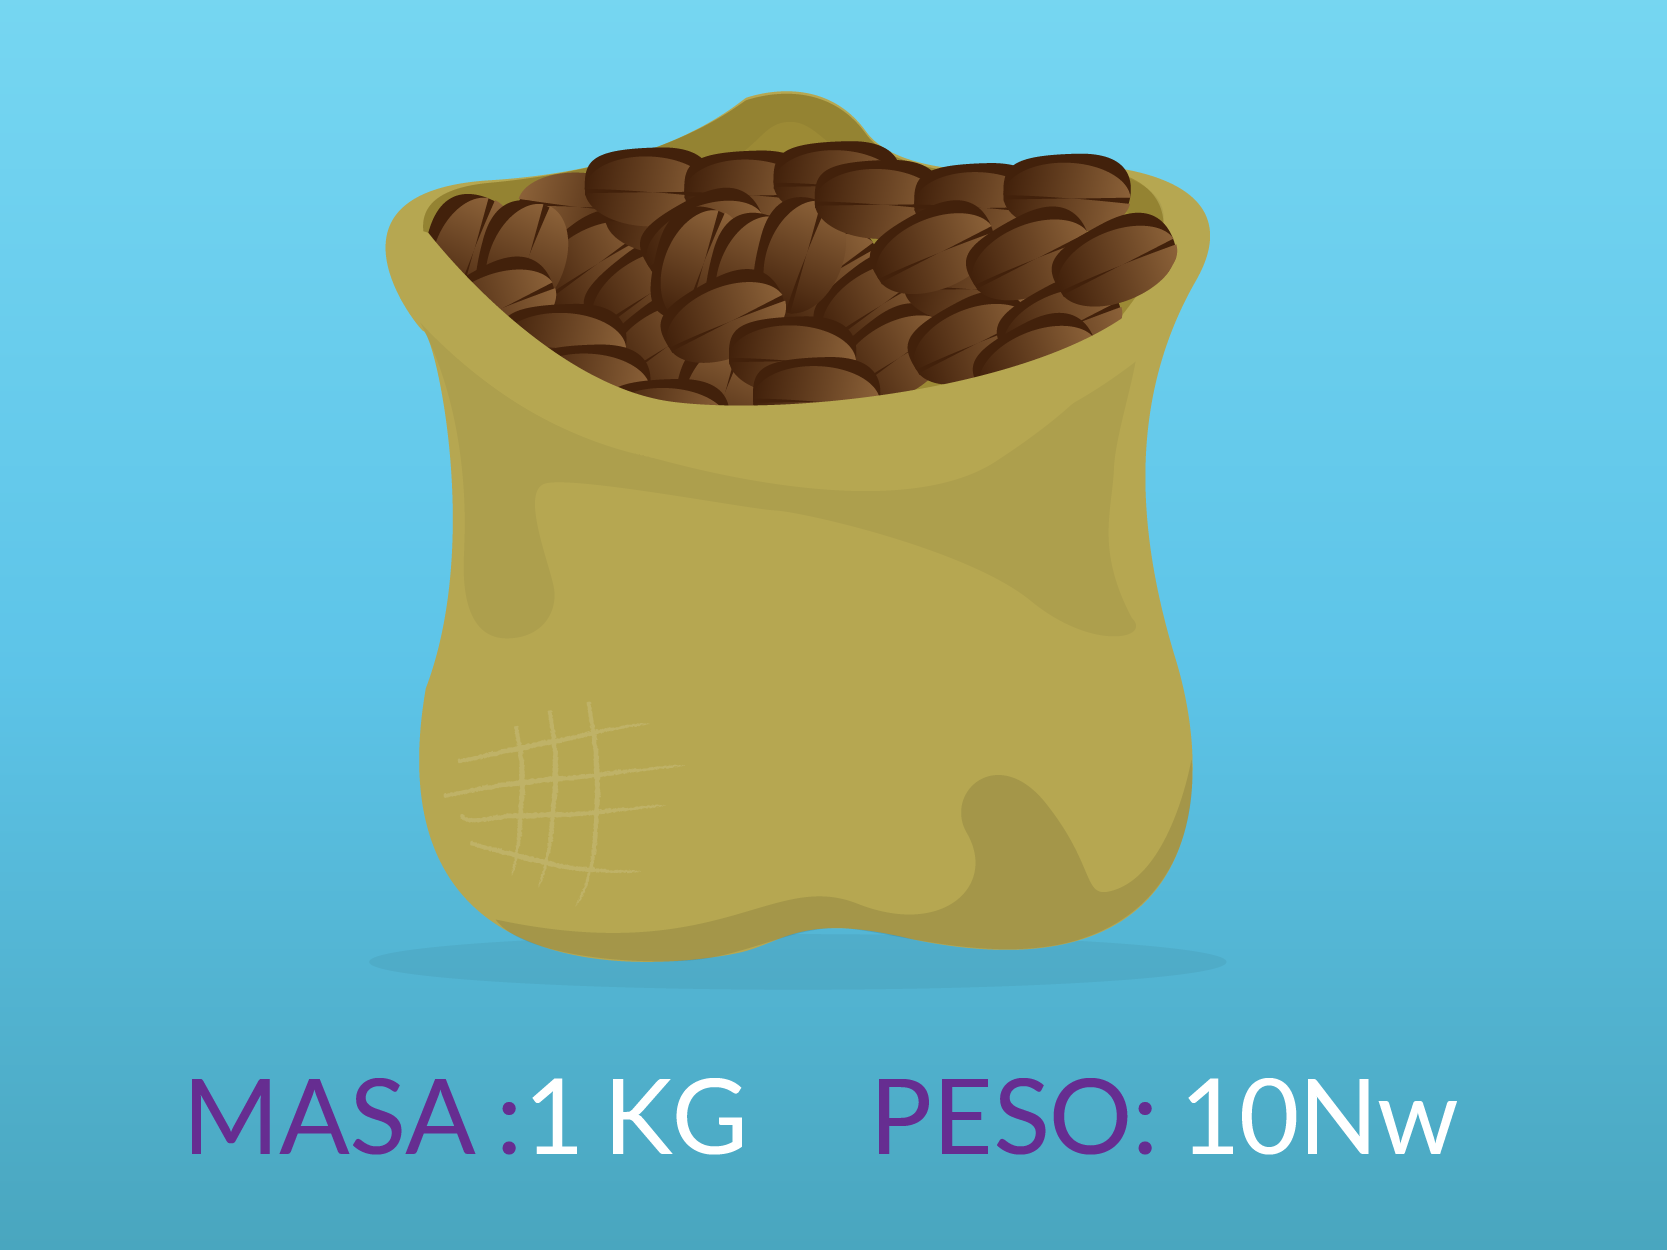 Un saco con una masa de 1 kilo tiene un peso de 10 Newtons.